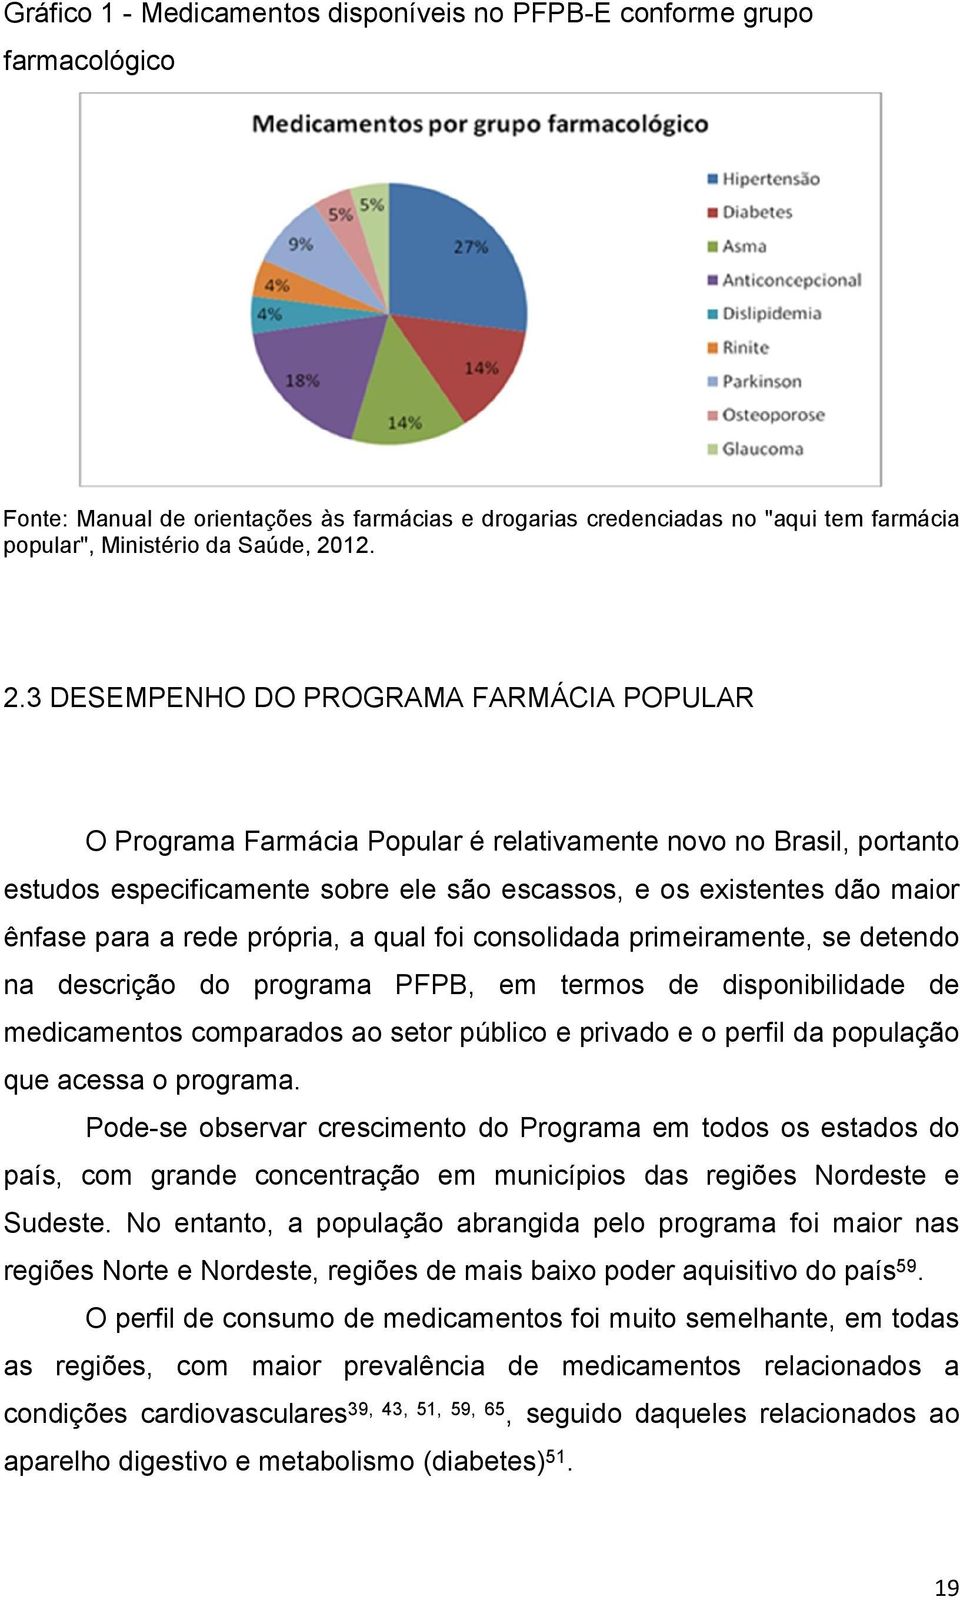 3 DESEMPENHO DO PROGRAMA FARMÁCIA POPULAR O Programa Farmácia Popular é relativamente novo no Brasil, portanto estudos especificamente sobre ele são escassos, e os existentes dão maior ênfase para a